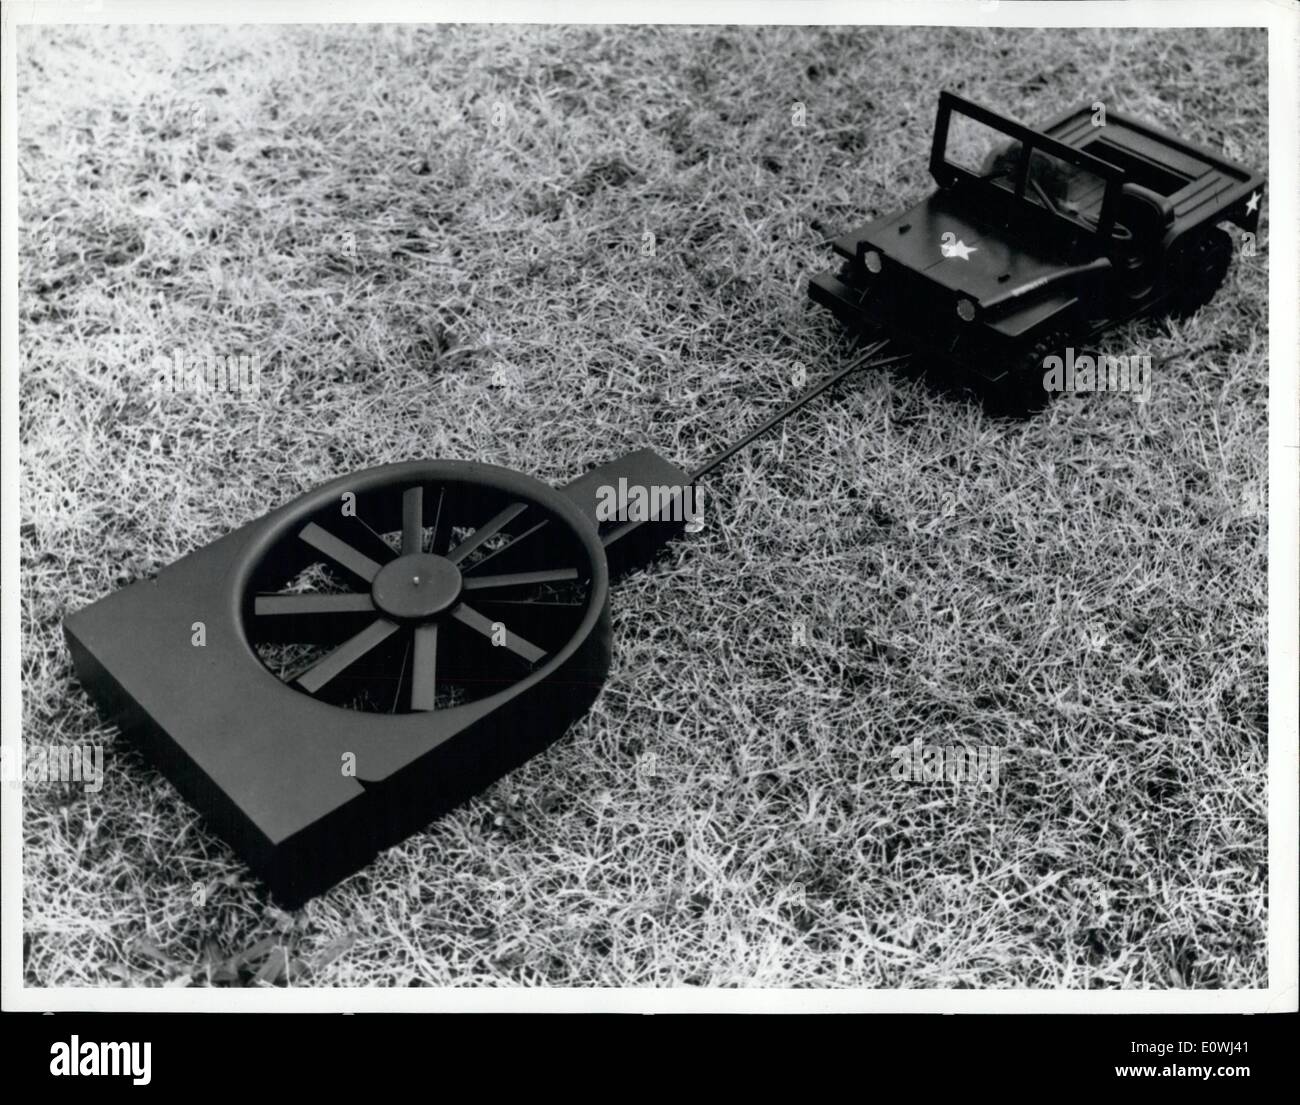 Mai 05, 1963 - Fort Belvoir, Virginie : modèle de plate-forme flottante de détection des mines pour être utilisé à la fois sur route et de cross-country d'une fonction de recherche, la mobilité de l'armée américaine, l'ingénieur commande les laboratoires de recherche et développement, de Fort Belvoir, Virginie, ont conçu l'idée de monter un détecteur sur un effet de sol automatique (GEMO) transporteur. Le coussin d'air - transporteur a l'aide d'un ventilateur pour soutenir l'ensemble de l'ensemble du détecteur au moins six pouces au-dessus du sol, il est attaché à l'avant d'une jeep ou d'un autre véhicule à l'aide d'une flèche articulée de 20 pieds qui va permettre le libre mouvement vertical Banque D'Images